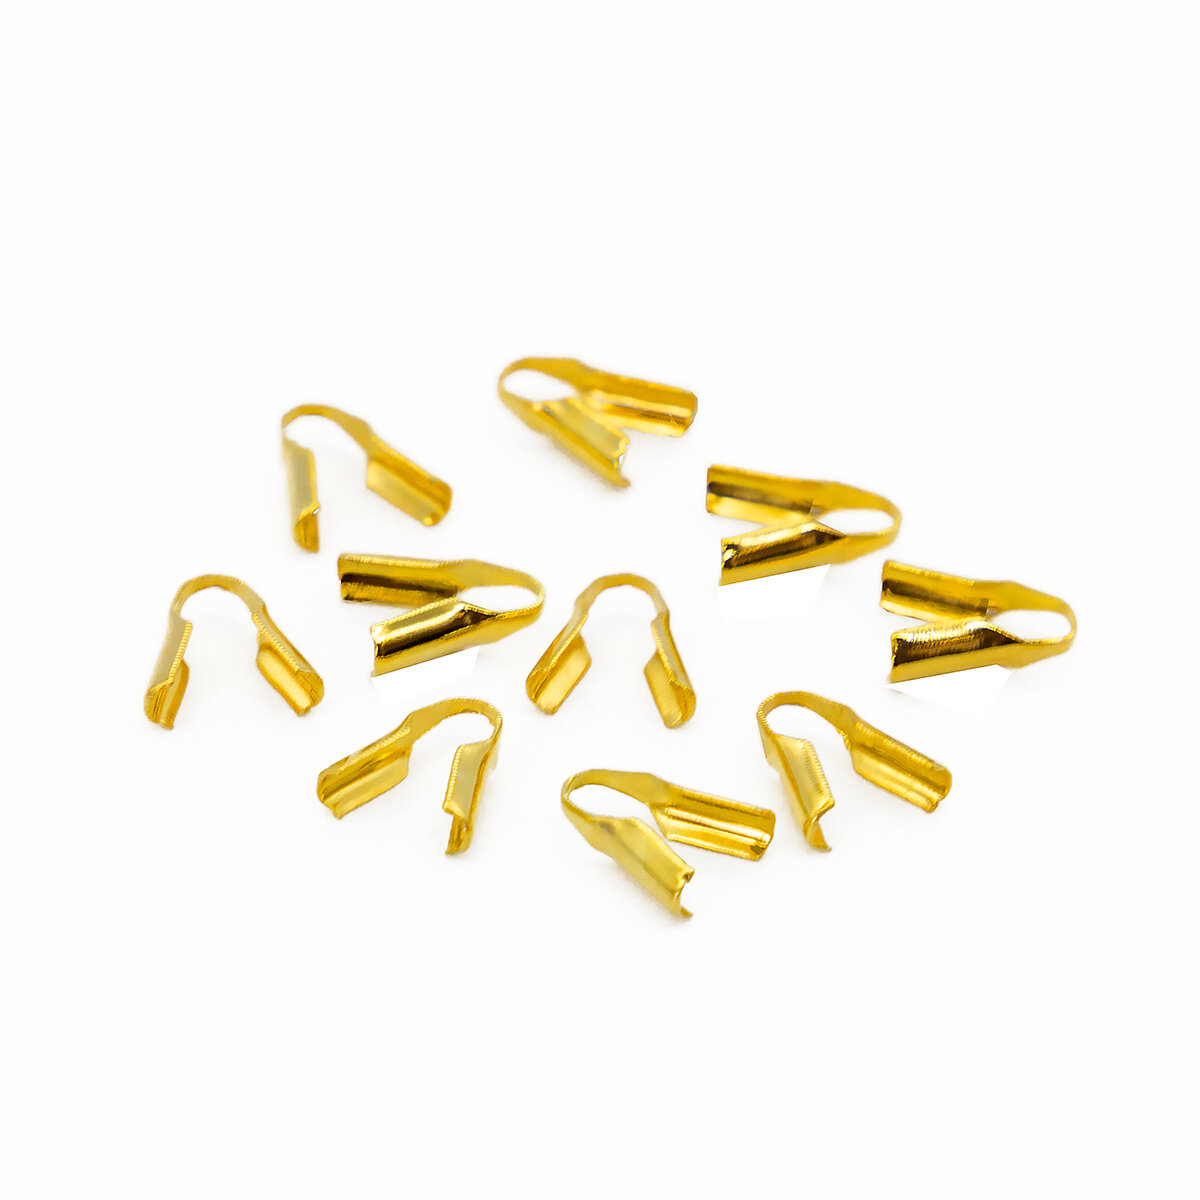 Протектор для защиты тросика Astra&Craft, 2 мм, 4AR2029 (яркое золото), 10 шт